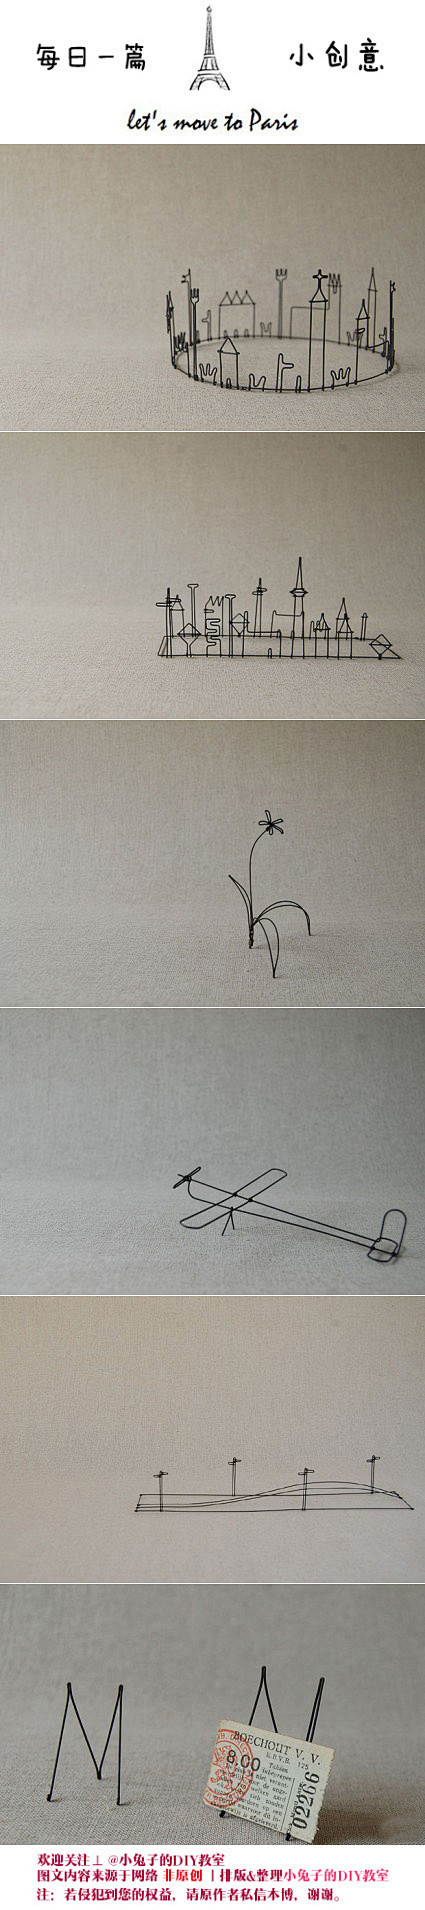 艺术家Masao Seki用不起眼的细铁...